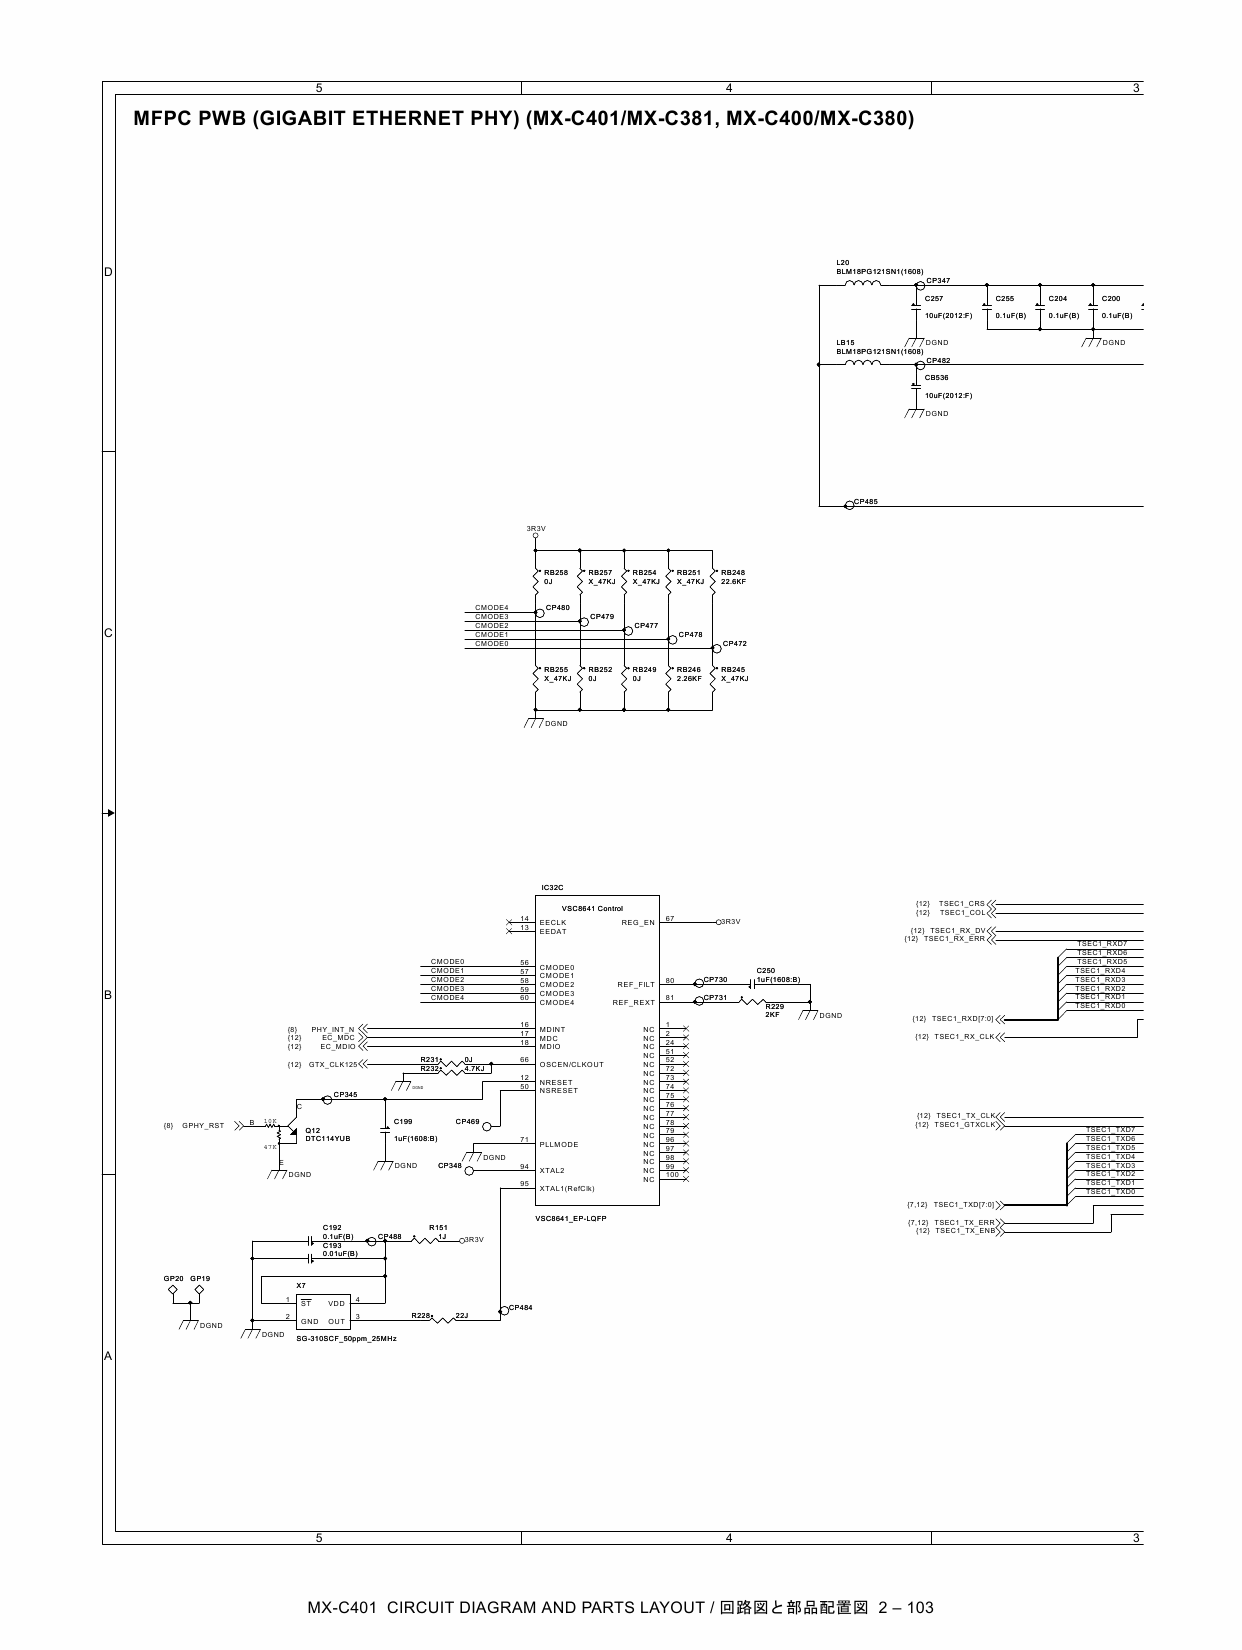 SHARP MX C310 C311 C380 C381 C400 C401 Circuit Diagrams-3